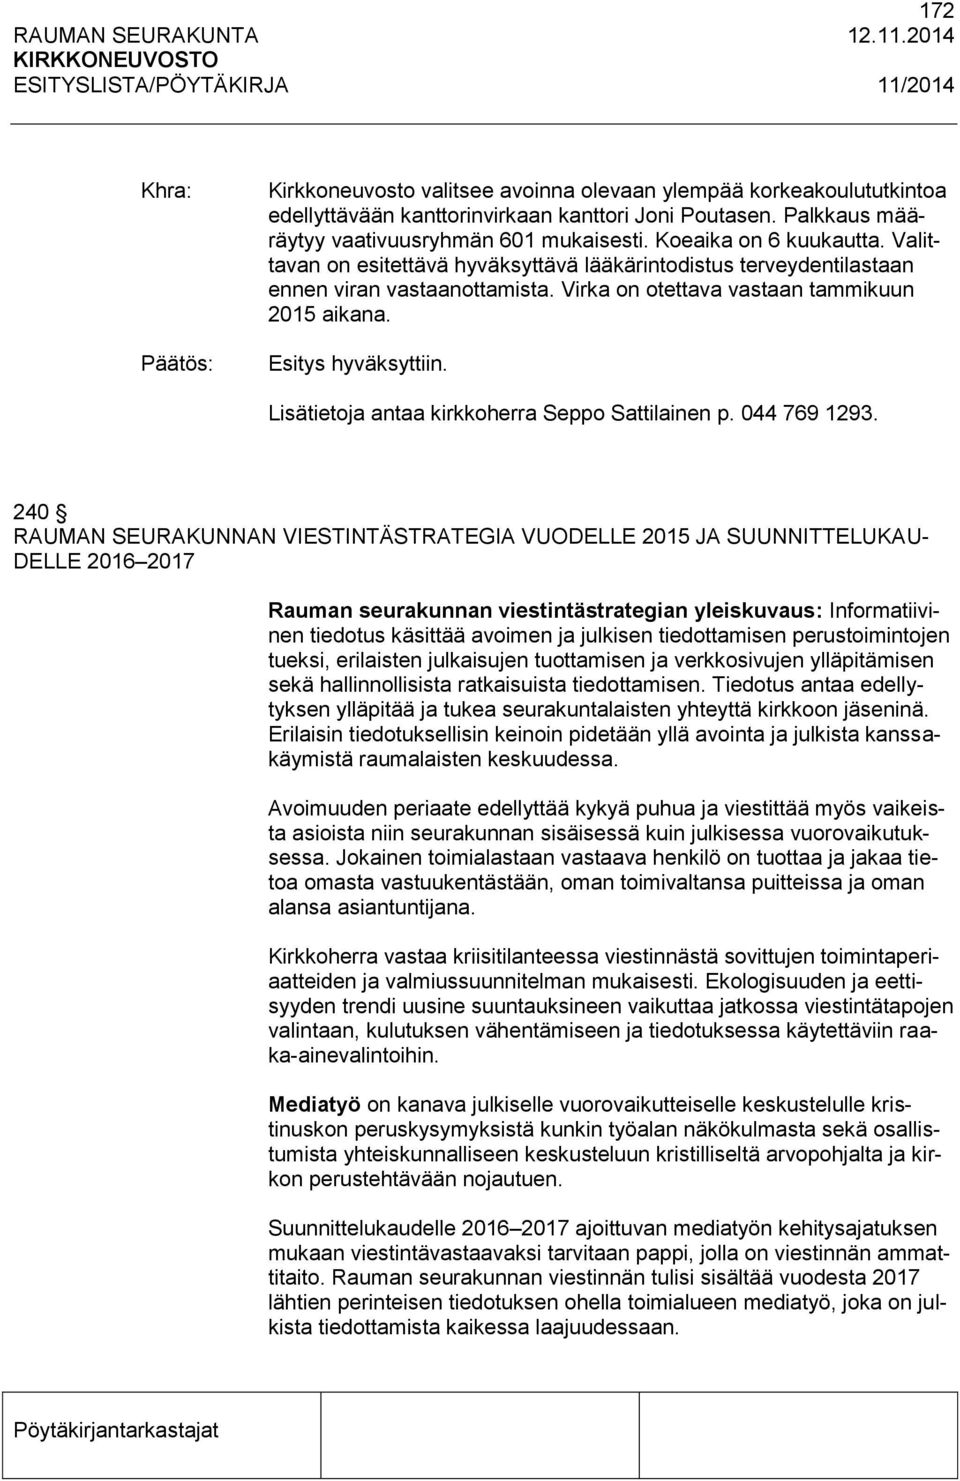 Lisätietoja antaa kirkkoherra Seppo Sattilainen p. 044 769 1293.